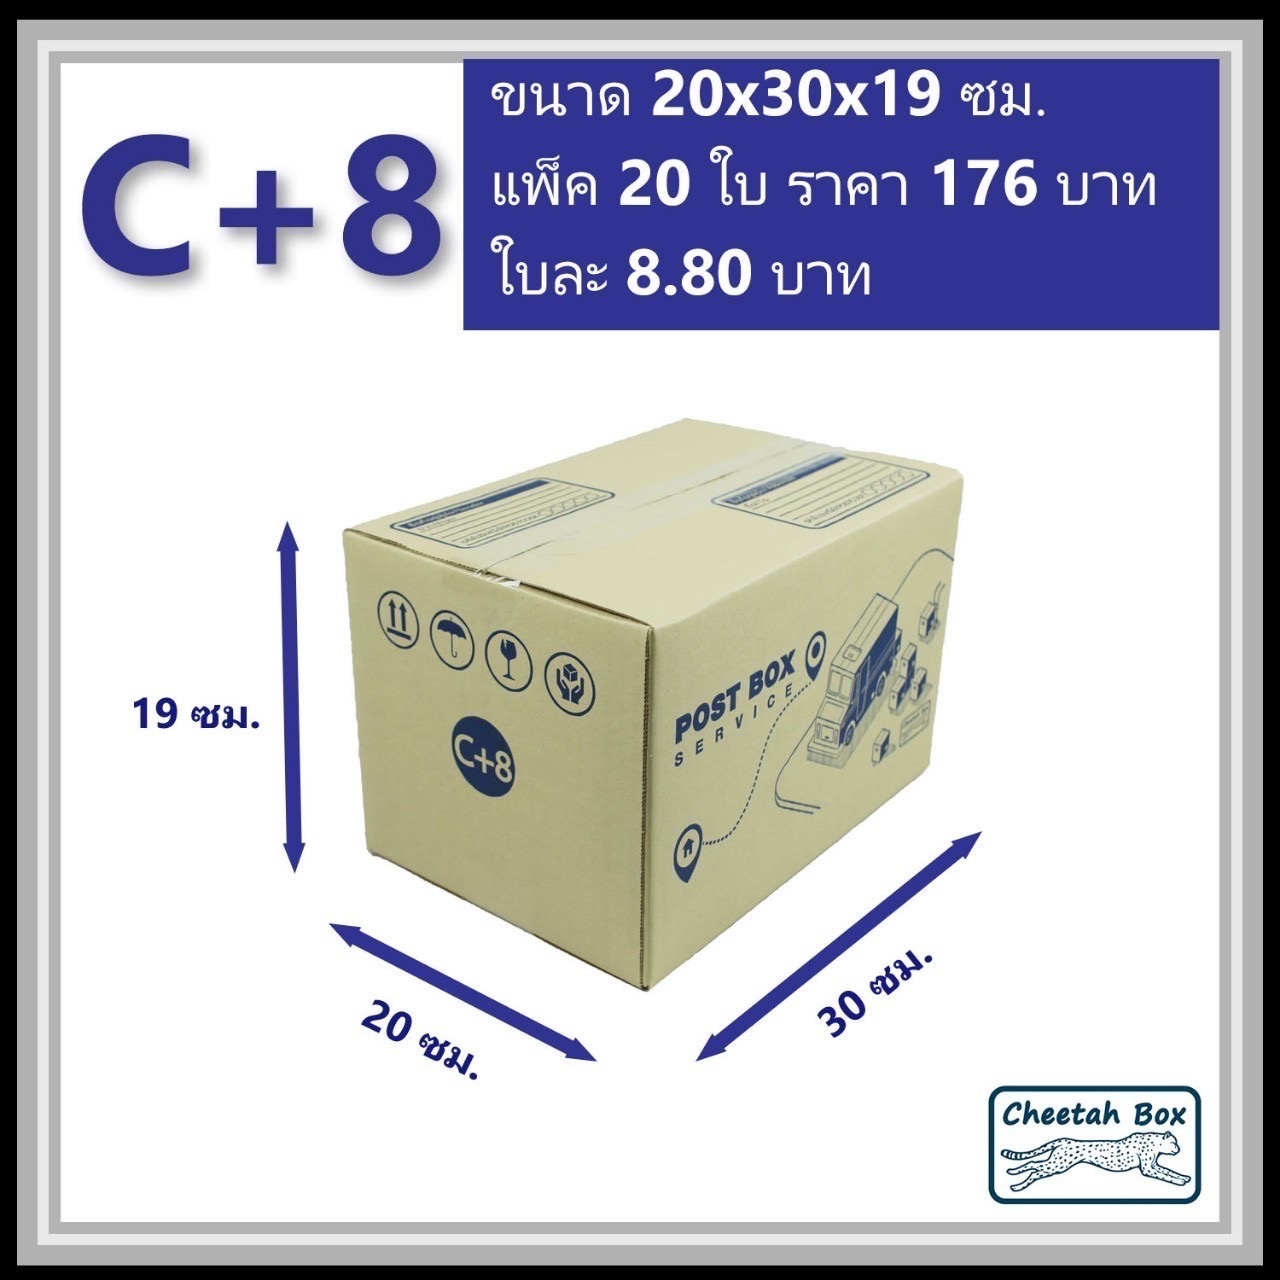 กล่องไปรษณีย์ C+8 (Cheetah Box ขนาด 20*30*19 CM)